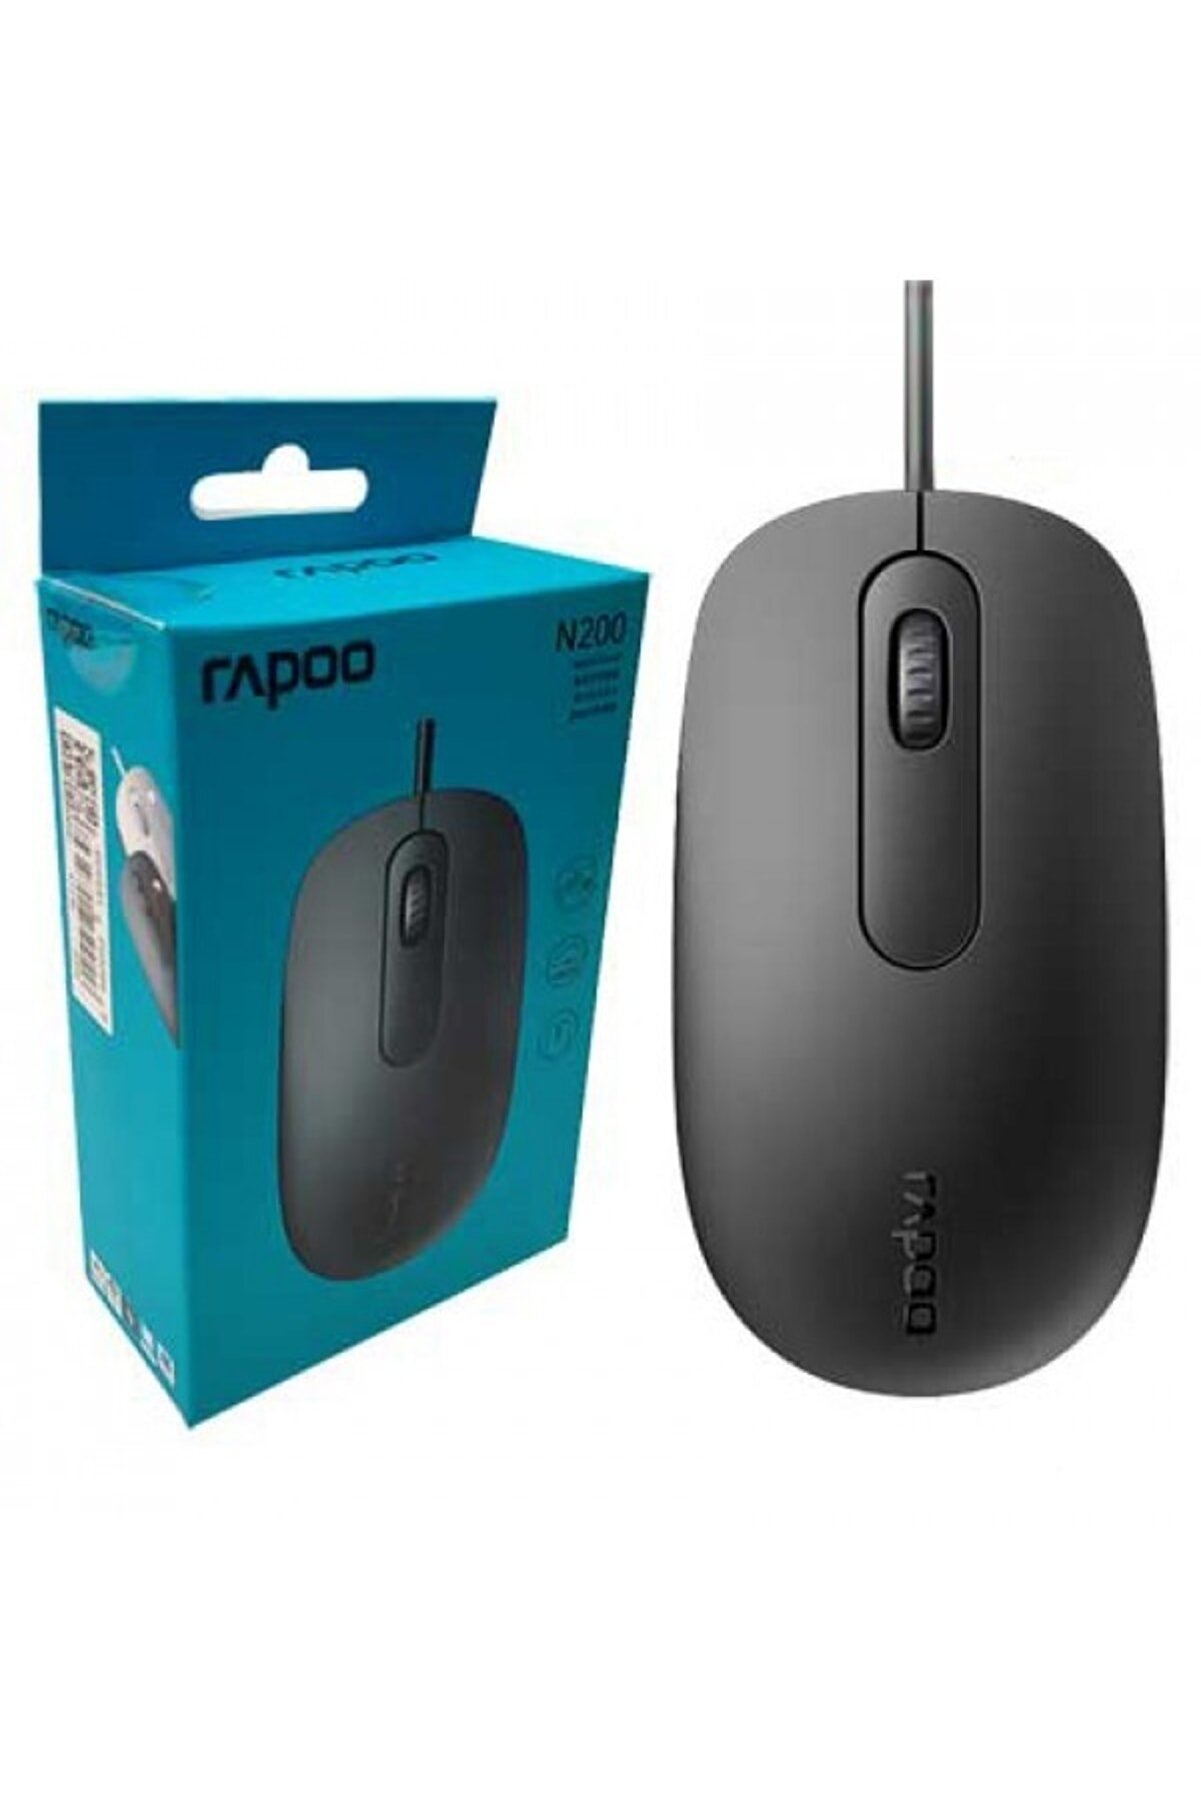 Rapoo N200 1600dpı Her Iki El Ile Kullanılabilir Usb Siyah Mouse